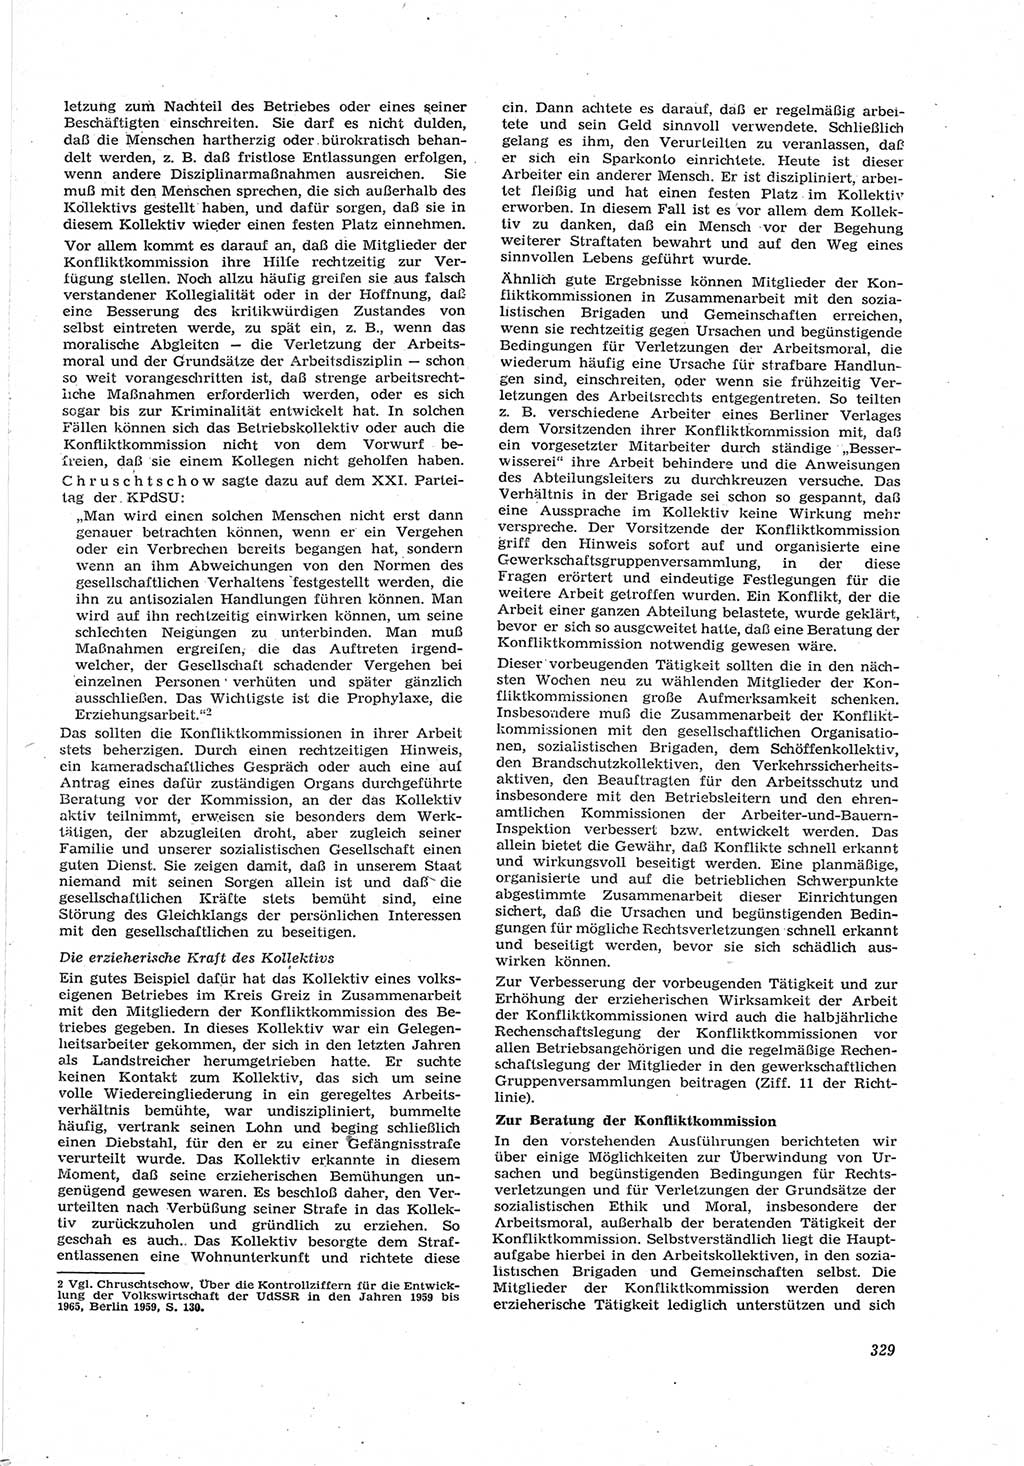 Neue Justiz (NJ), Zeitschrift für Recht und Rechtswissenschaft [Deutsche Demokratische Republik (DDR)], 17. Jahrgang 1963, Seite 329 (NJ DDR 1963, S. 329)